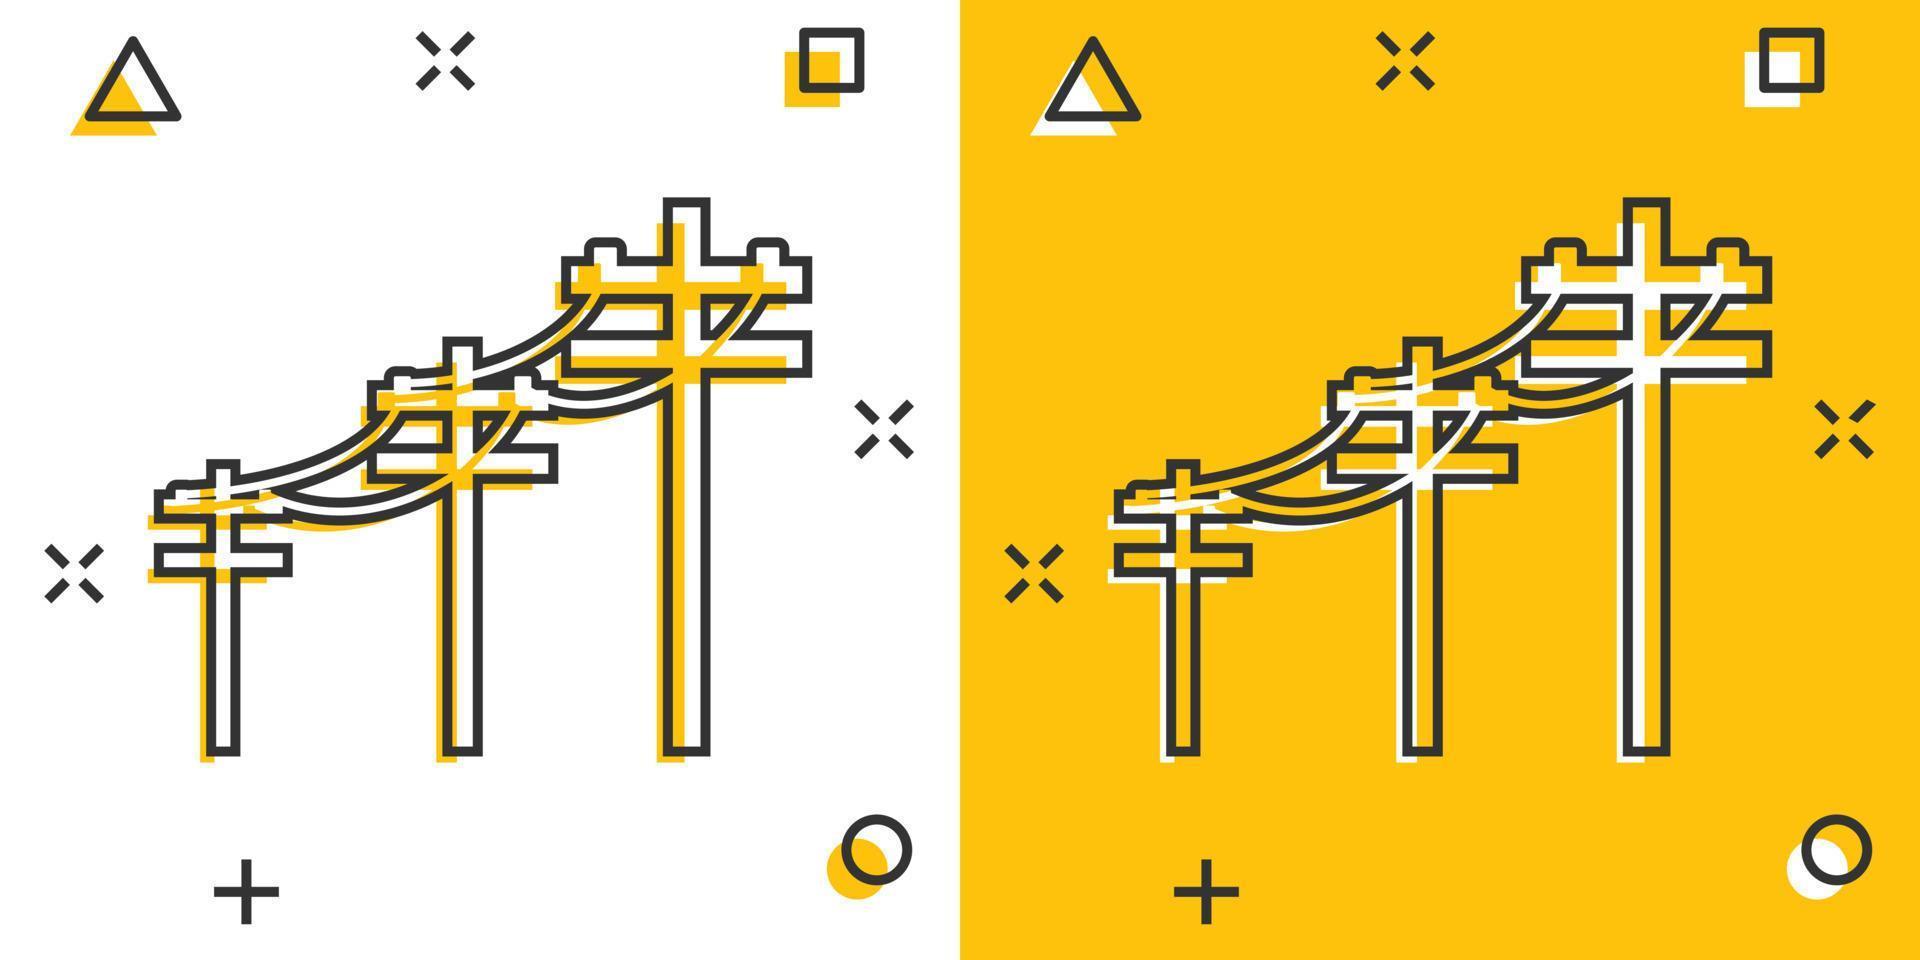 Vektor Cartoon Hochspannungsleitungen Symbol im Comic-Stil. Piktogramm für elektrisches Polzeichen. Power Line Business Splash-Effekt-Konzept.